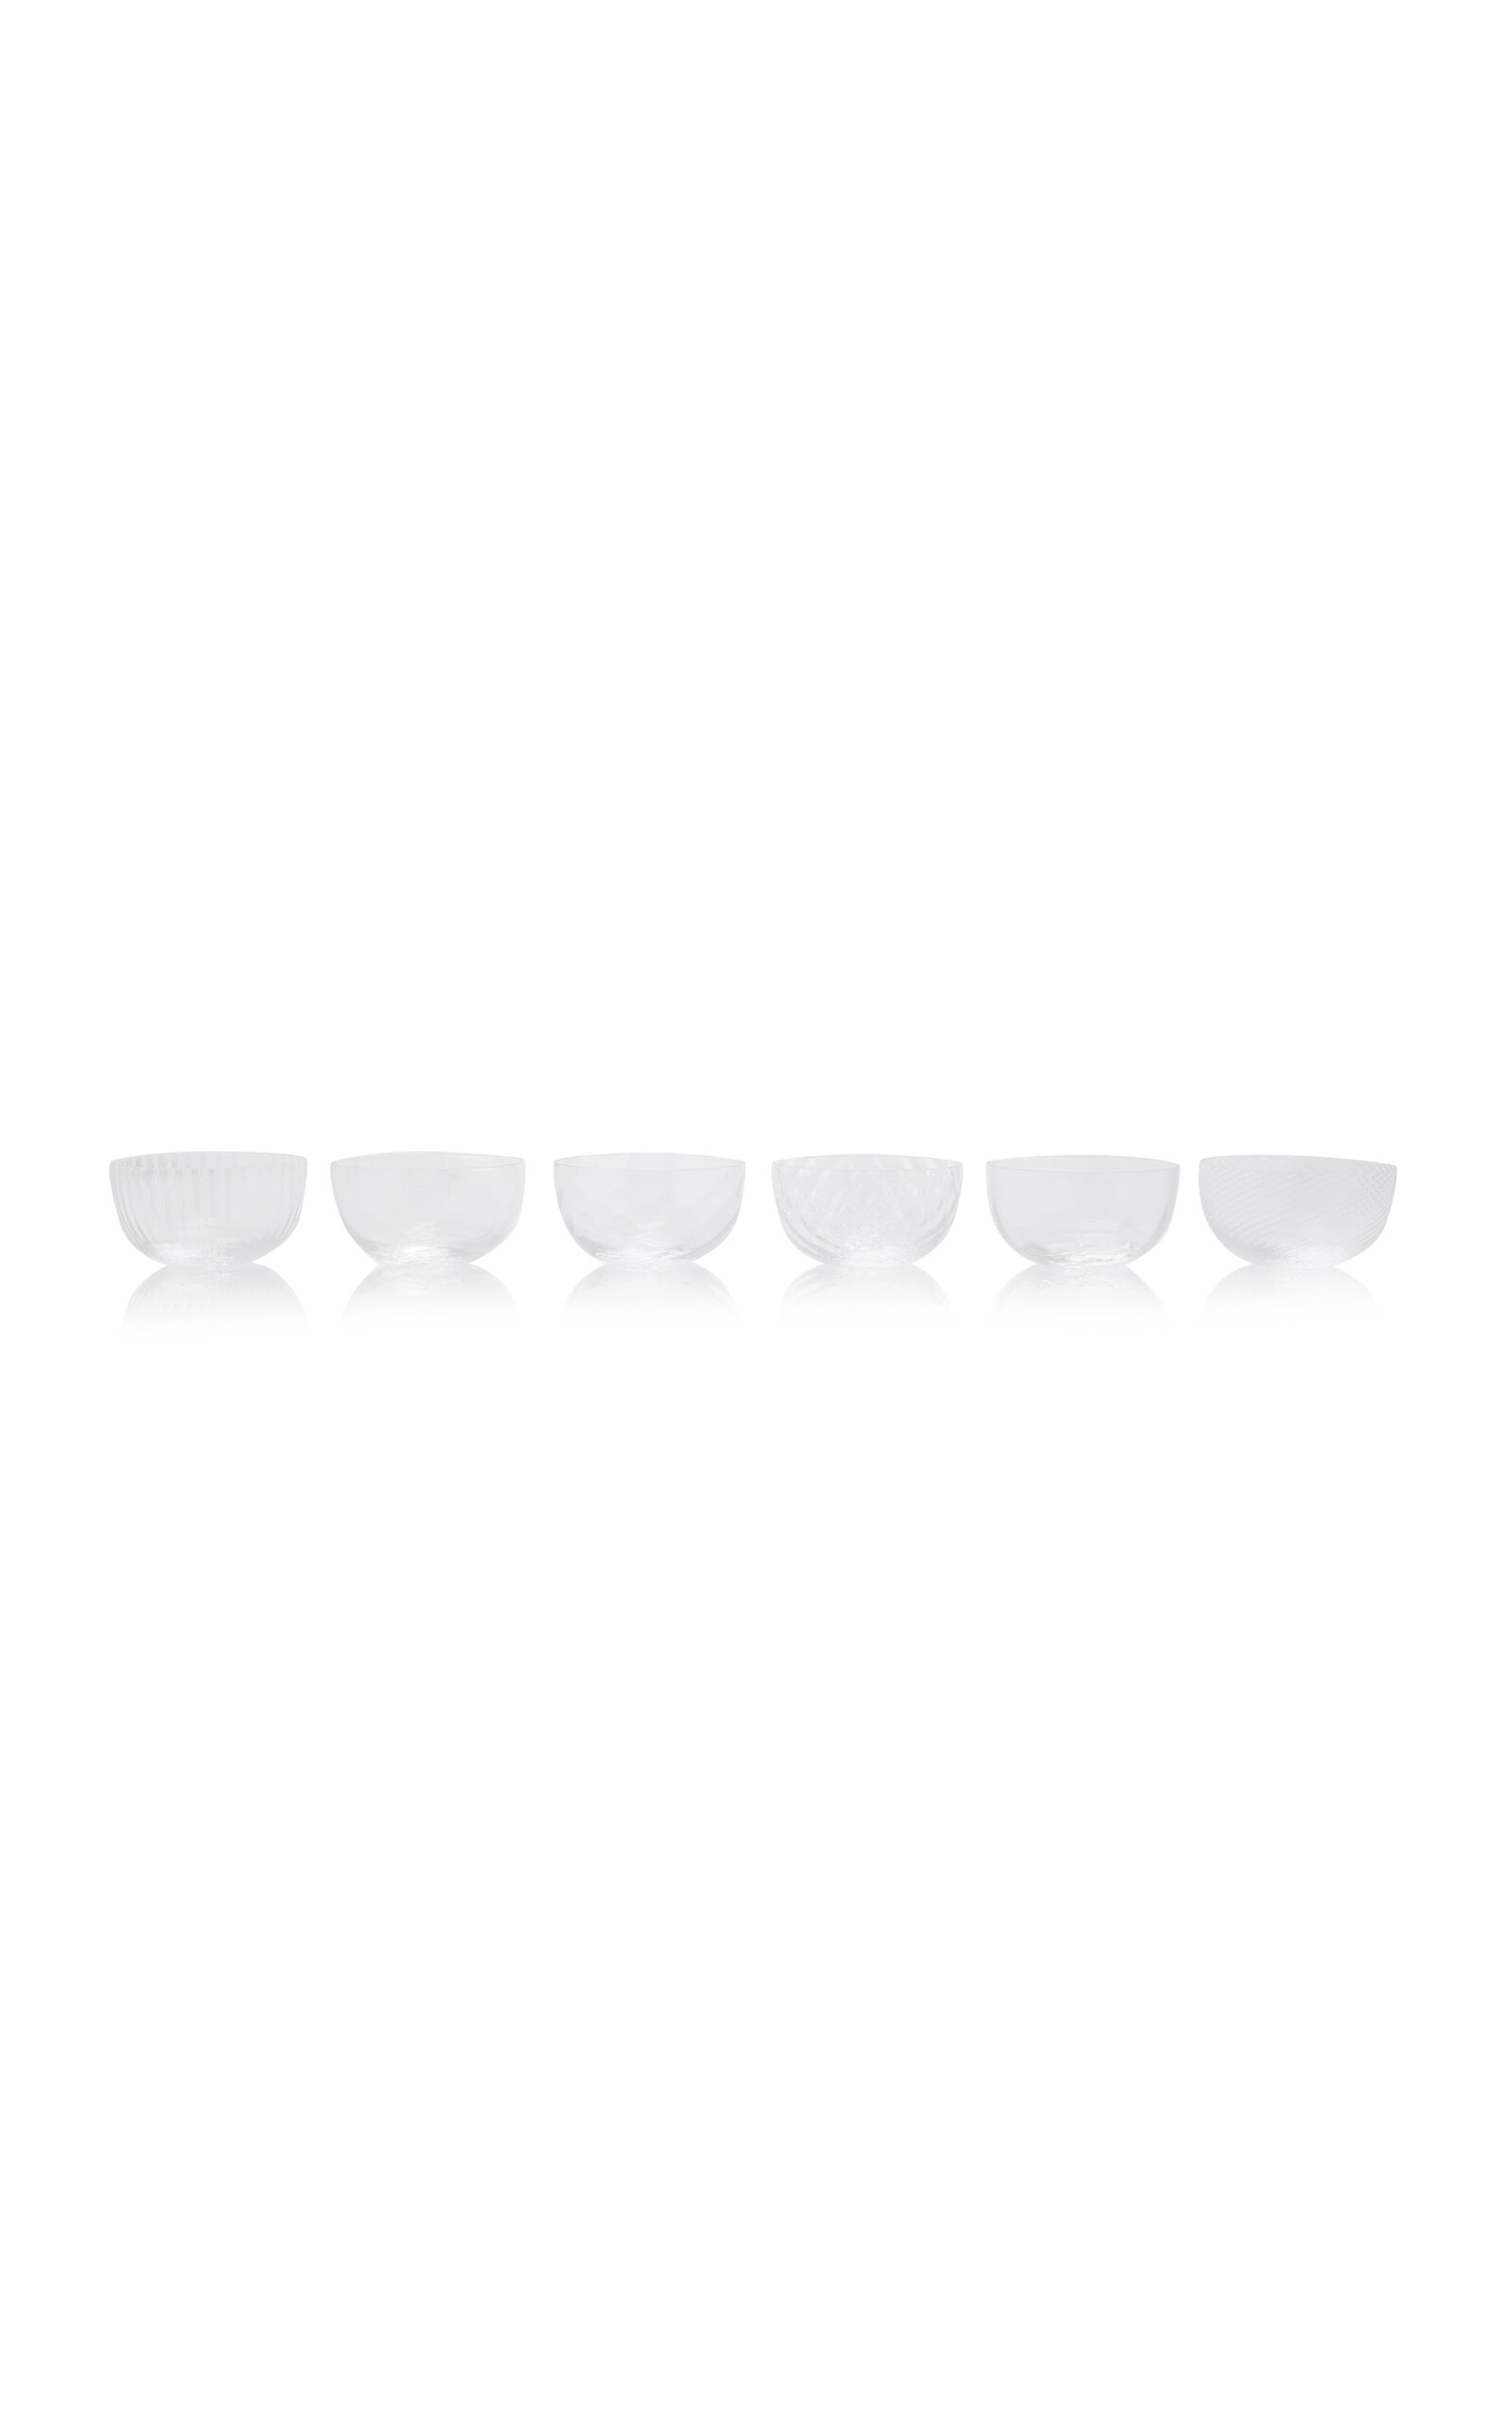 Nasonmoretti Set-of-six Idra Murano Dessert Cups In White